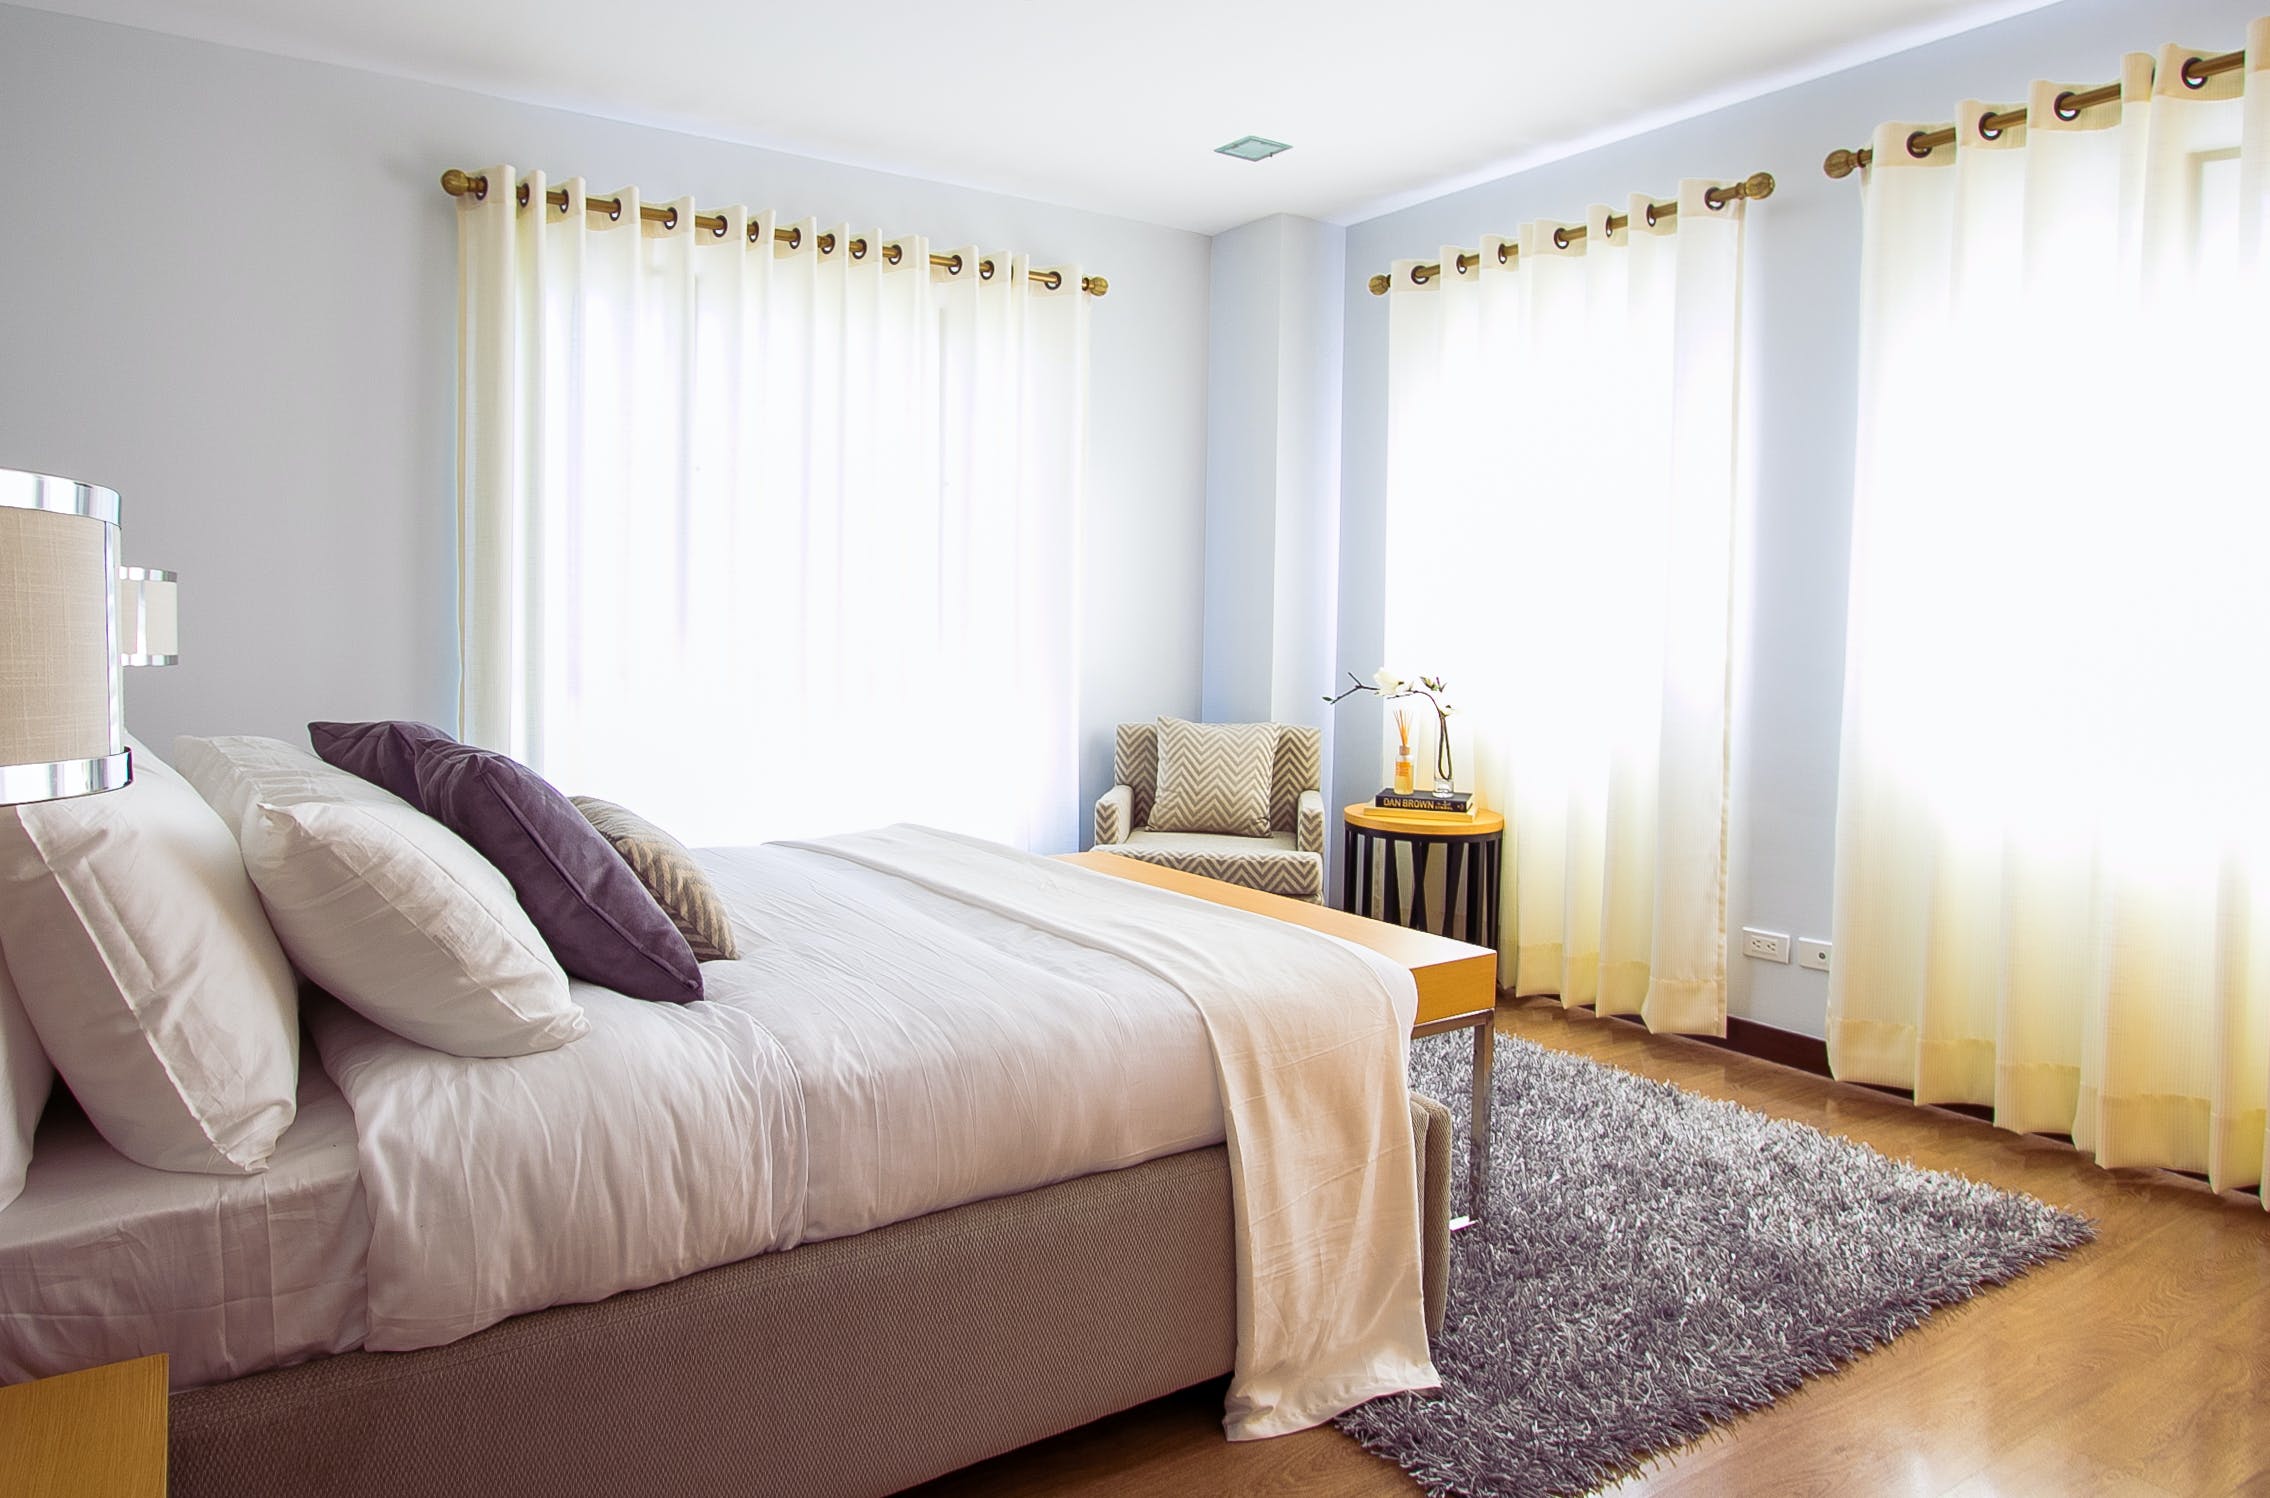 Łóżka Sypialniane 180×200: Przestrzeń i Komfort dla Twojego Wypoczynku